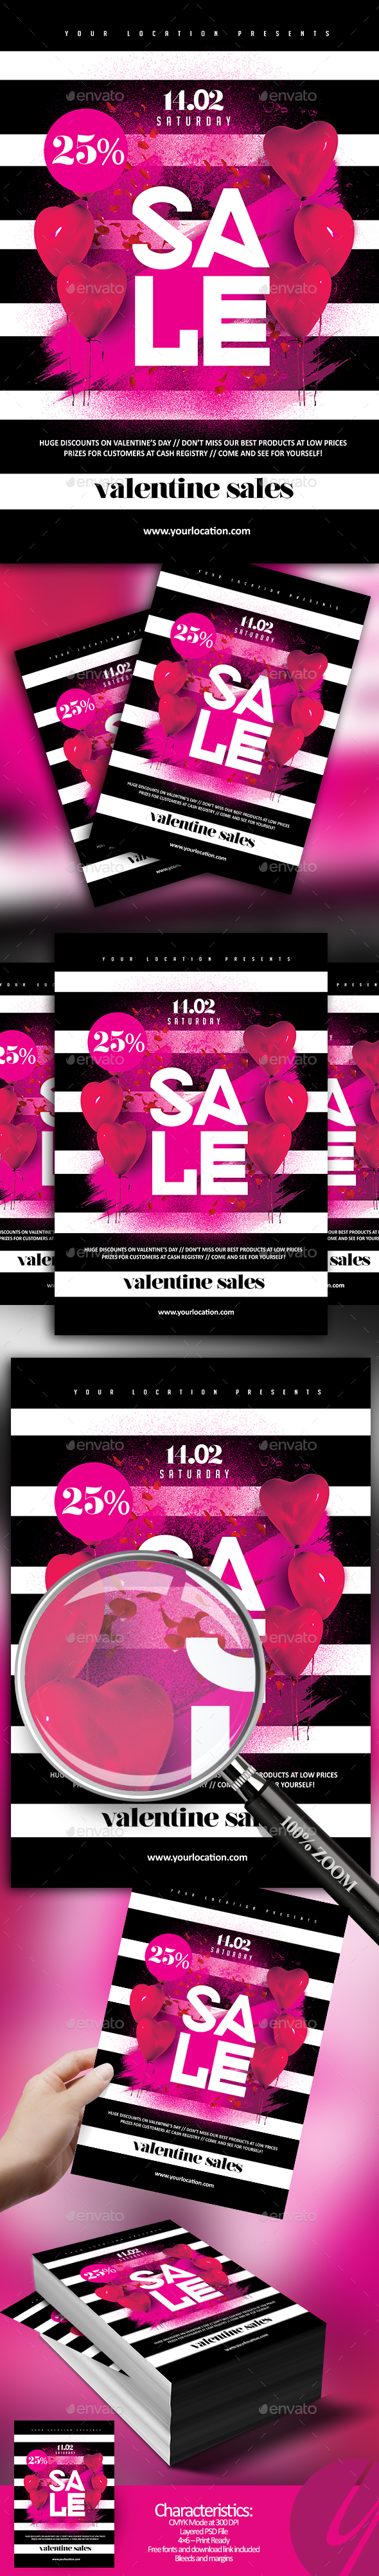 Valentine Sales Flyer